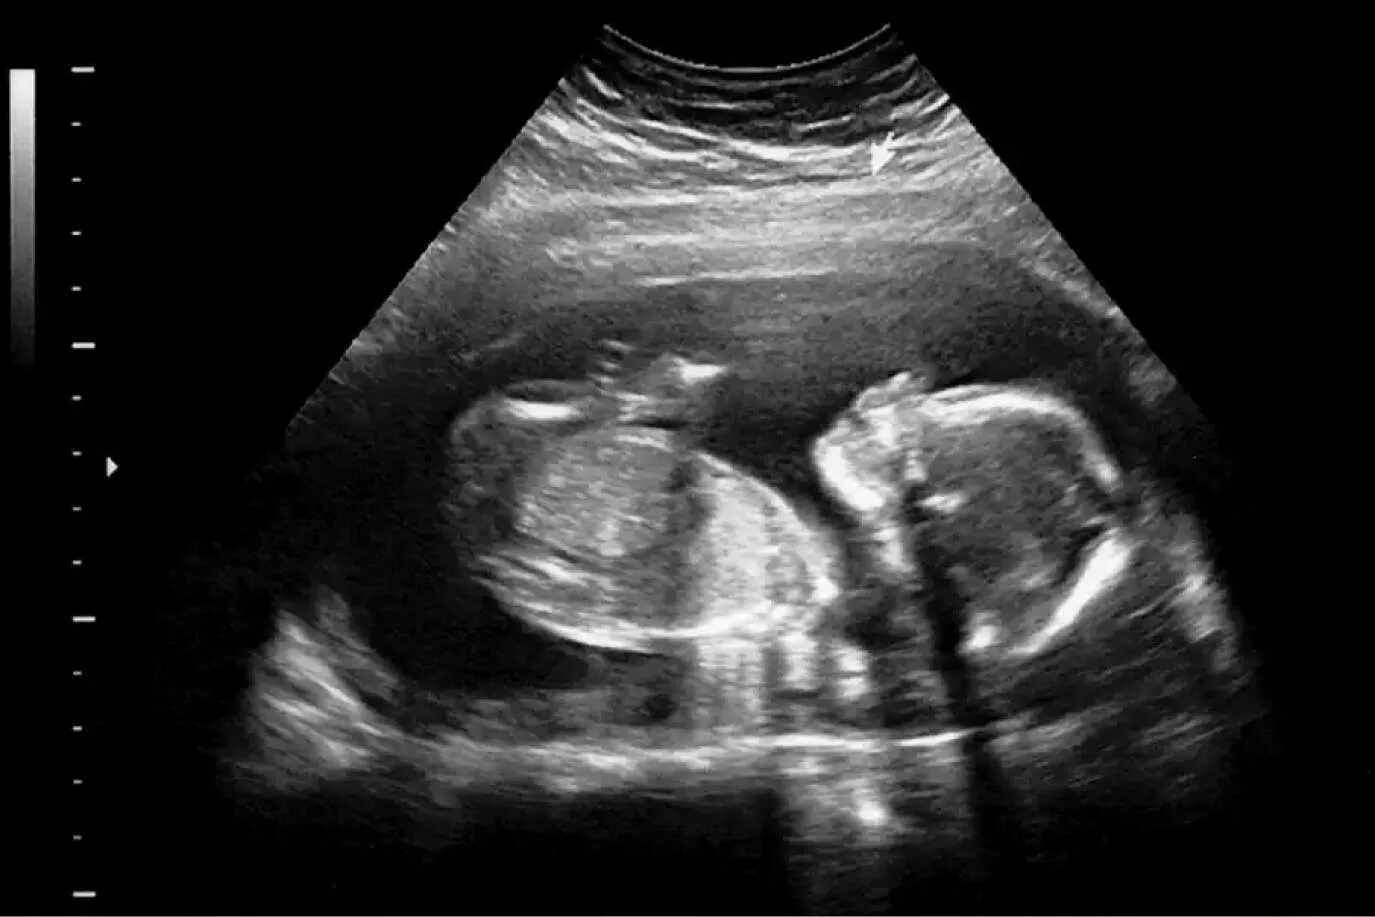 УЗИ девочки на 20 неделе беременности. УЗИ 20 недель беременности фото. УЗИ мальчика снимки 22 недели беременности. Фото плода на 20 неделе беременности УЗИ девочка.